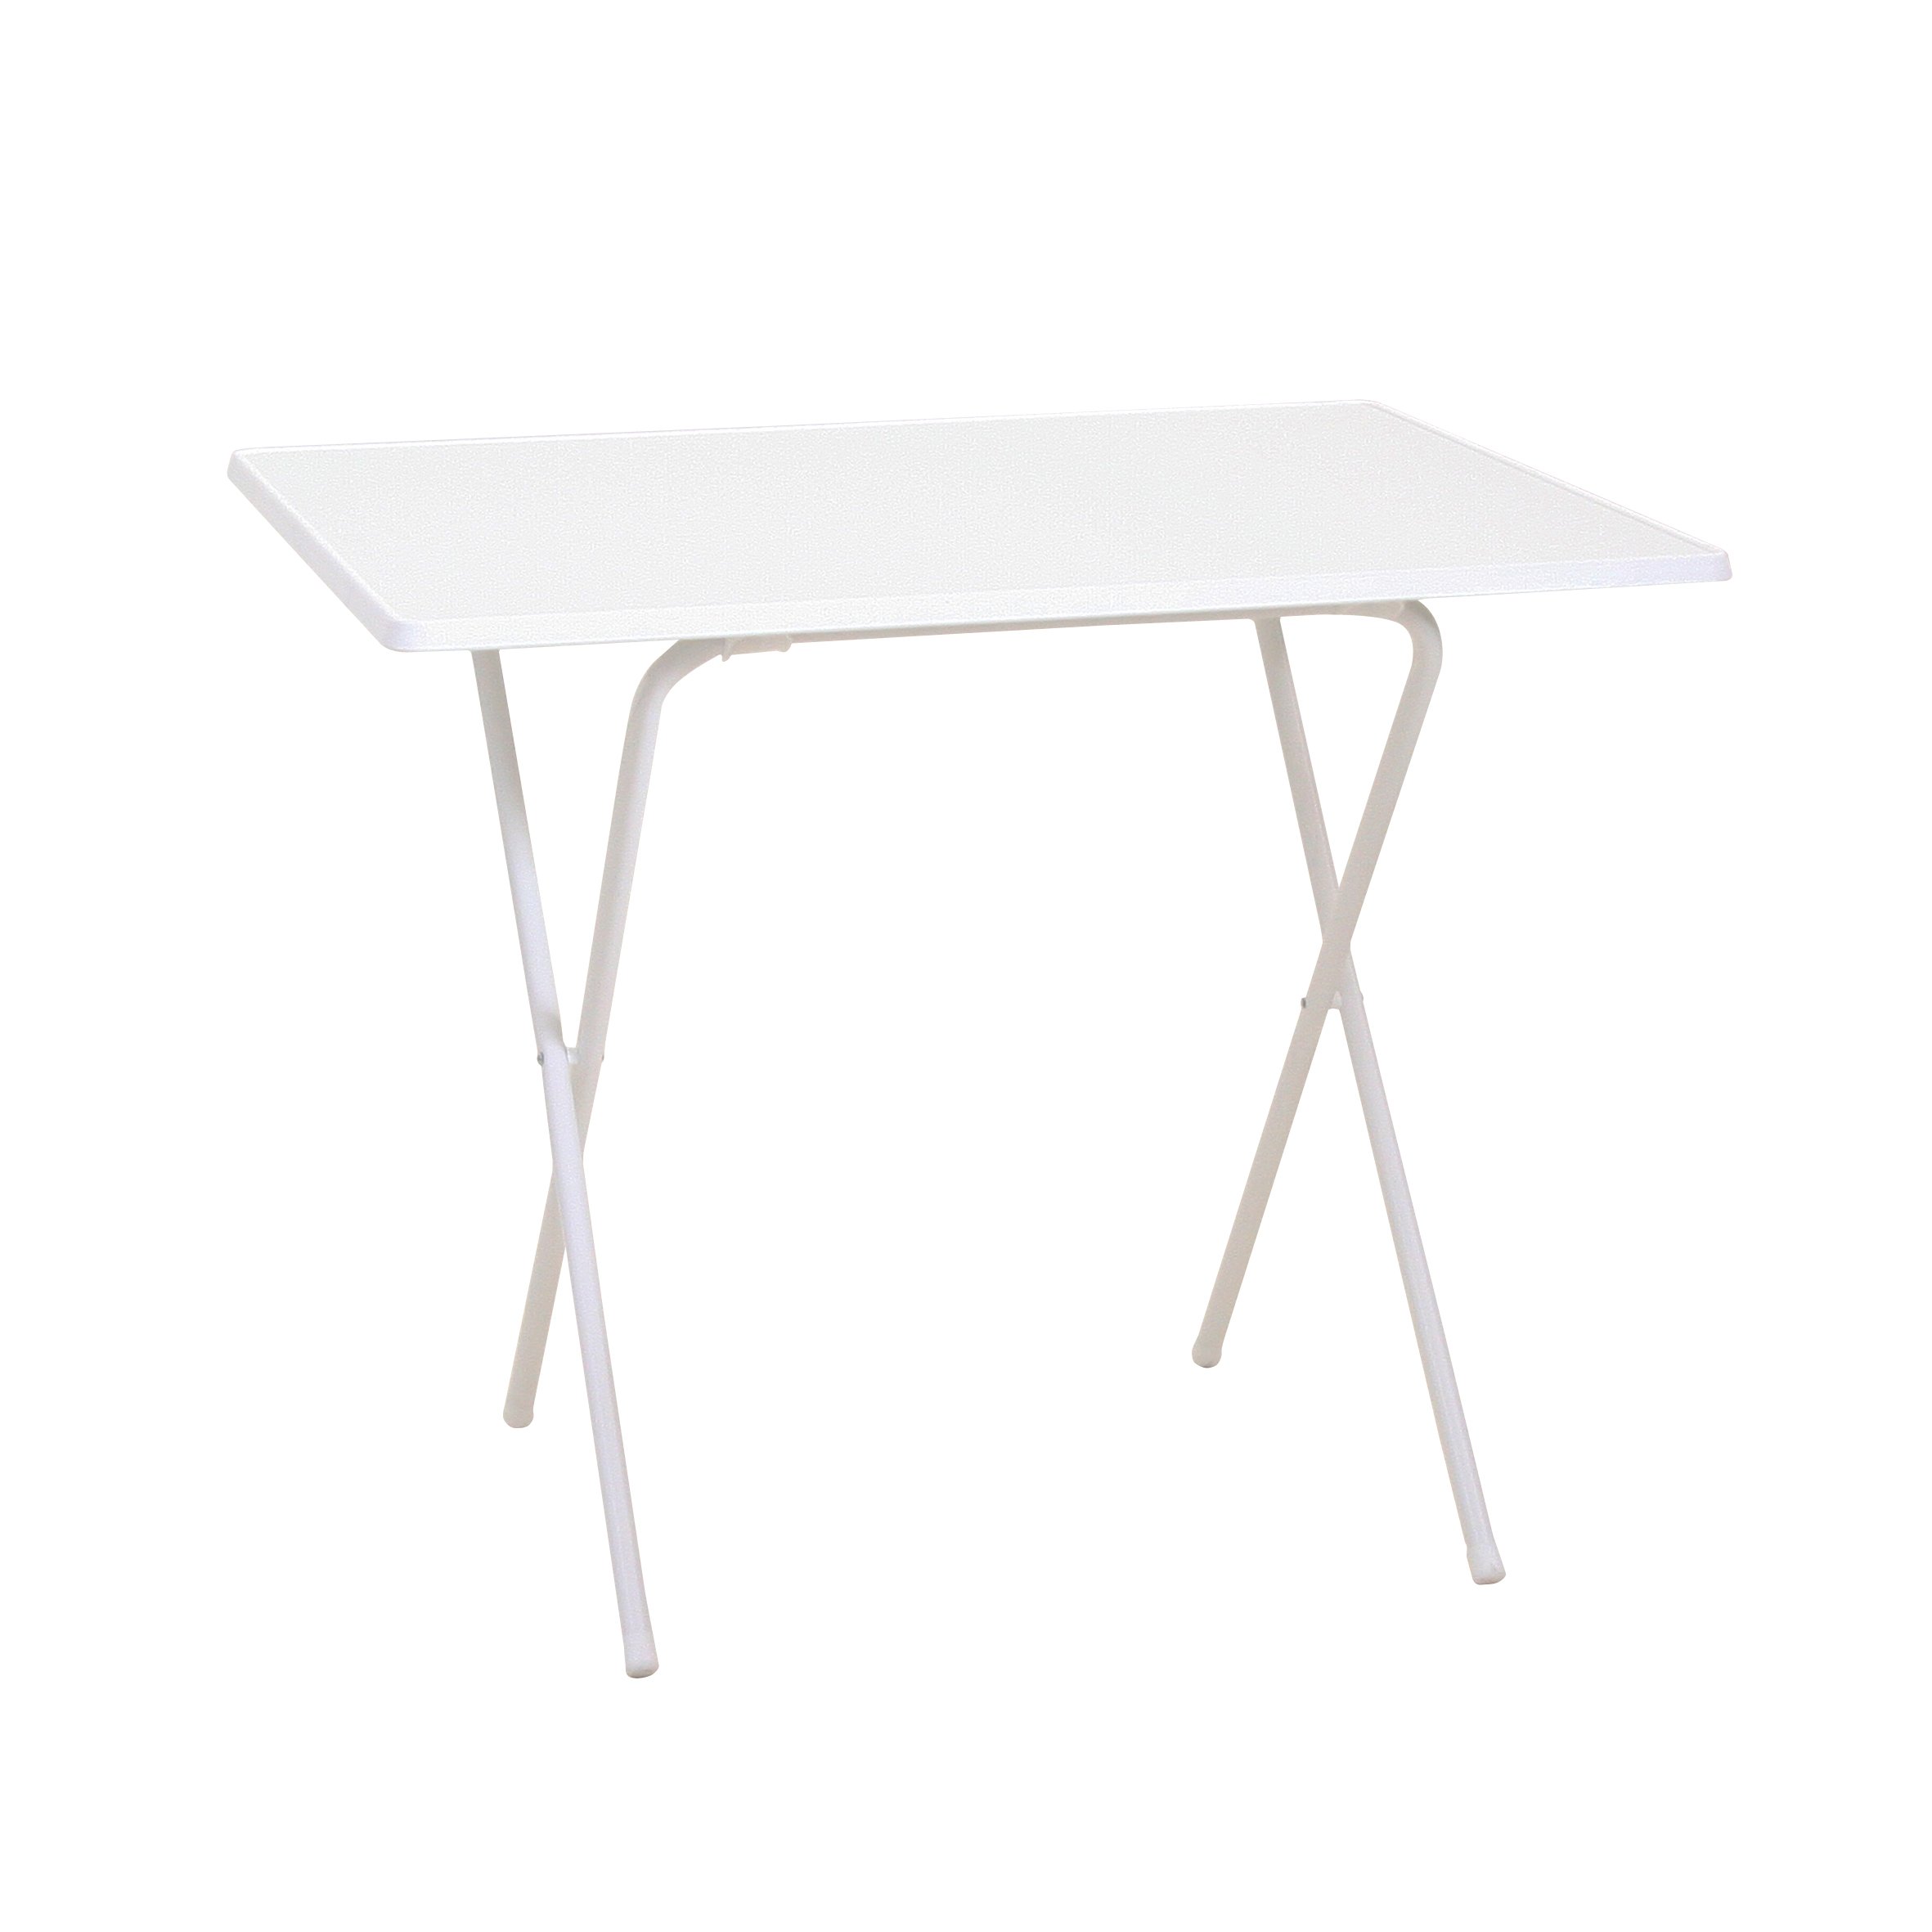 Greemotion Scherentisch in weiß, ca. 60 x 63 x 82 cm, Balkontisch klappbar, Beistelltisch mit Holz-Kunststoff Sevelit Tischplatte, Kleiner Tisch für Camping, Multifunktionstisch witterungsbeständig